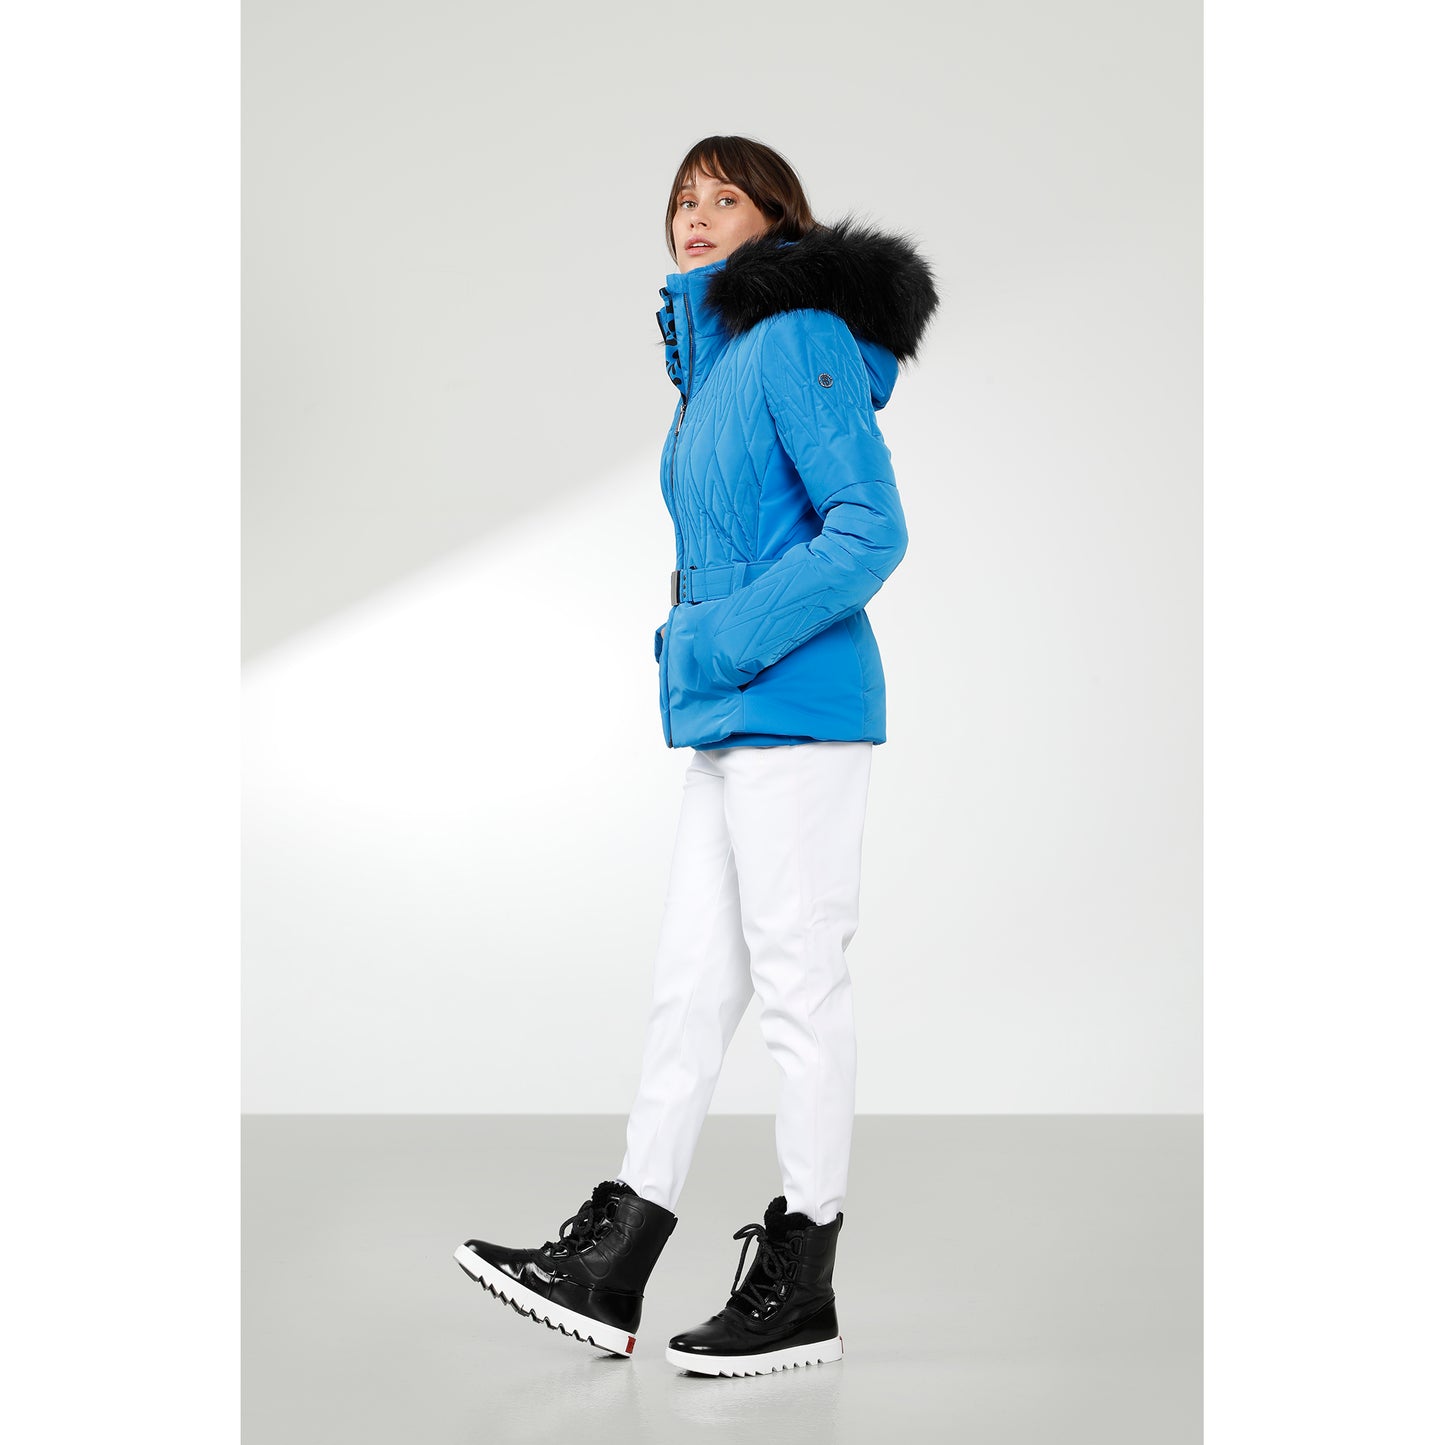 Poivre Blanc Women's Hybrid Ski jacket in White 1003 – Poivre